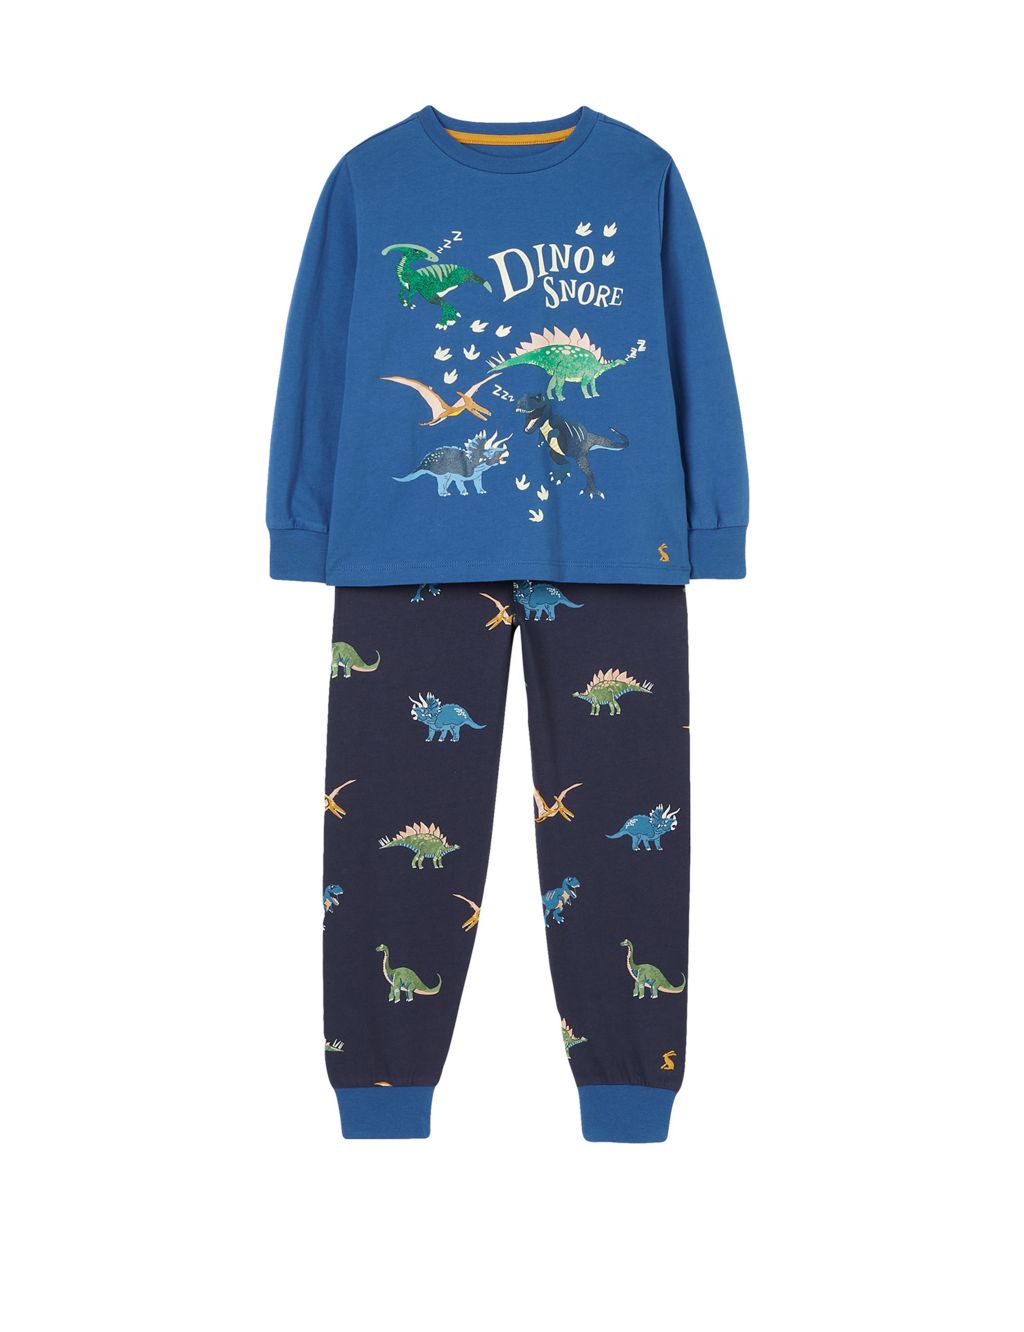 Pure Cotton Dinosaur Pyjamas (2-12 Yrs) image 1